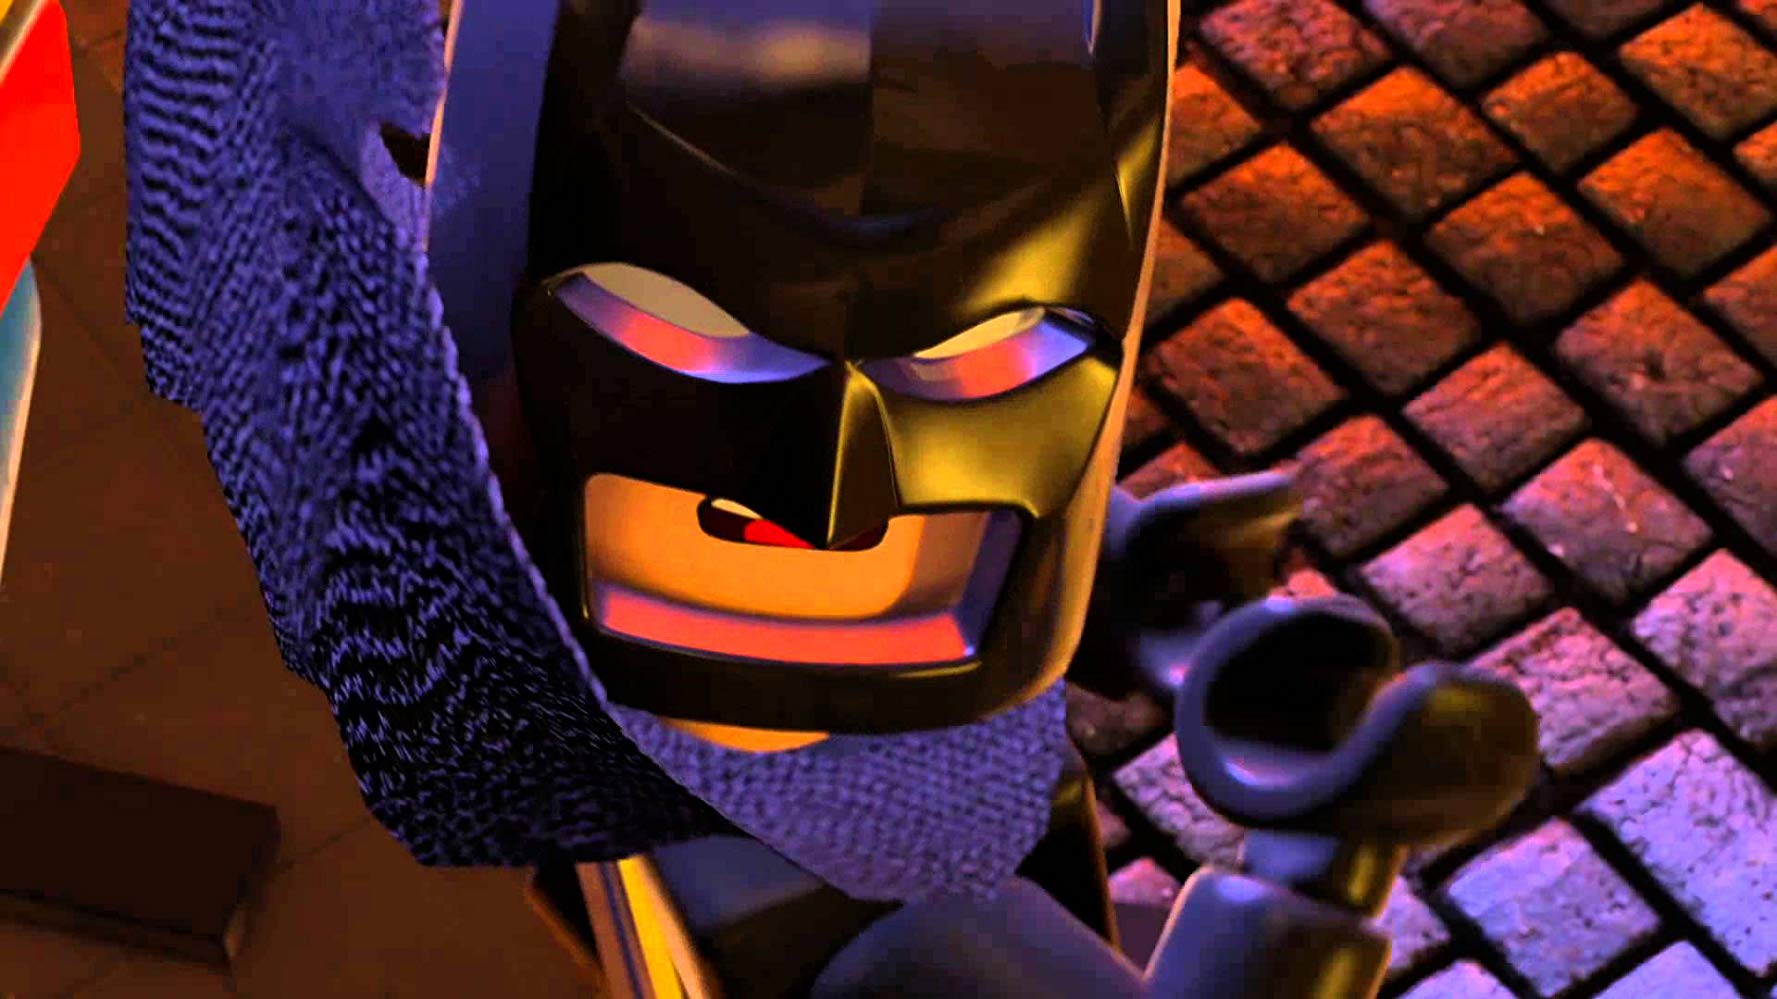 th lego batman movie online free